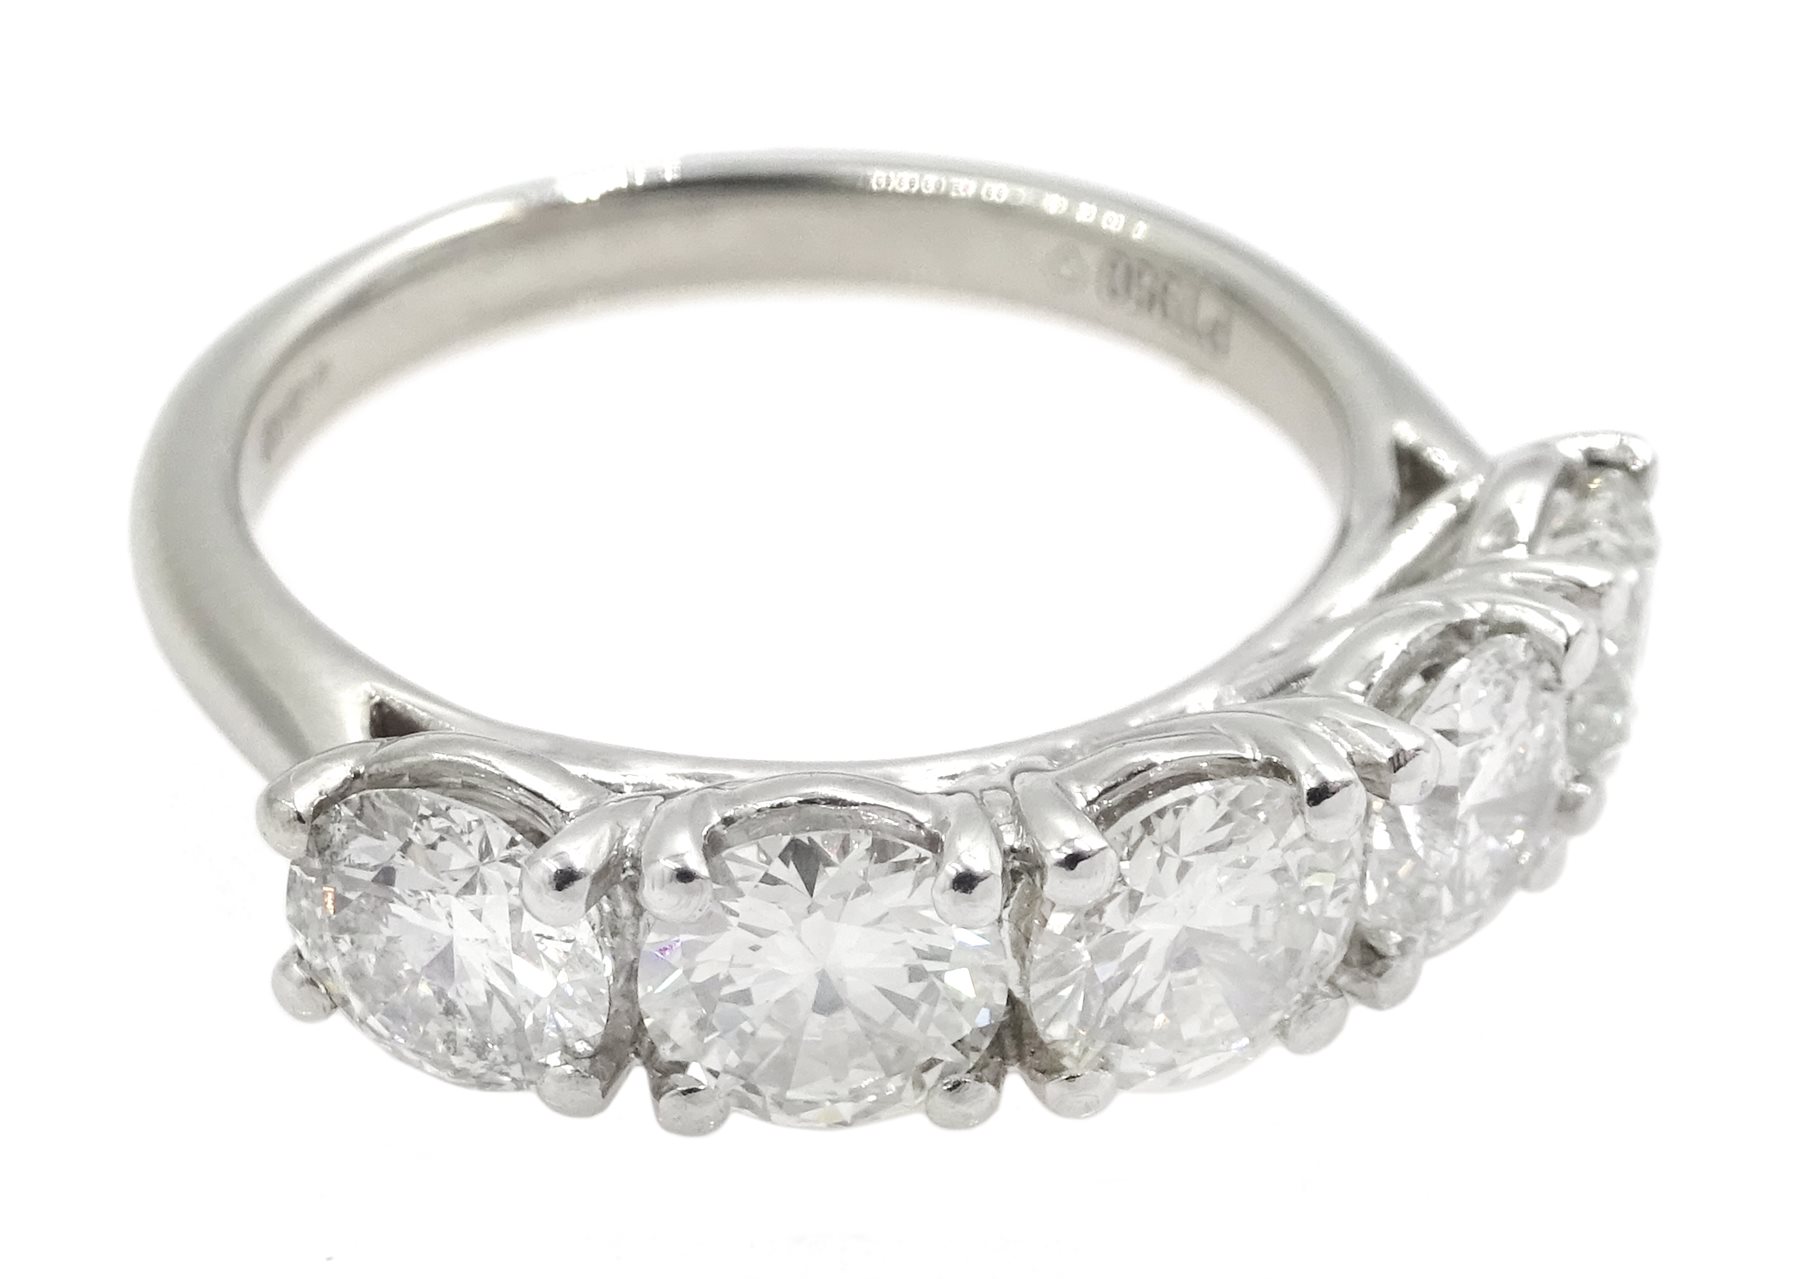 Platinum five stone round brilliant cut diamond ring - Image 3 of 5